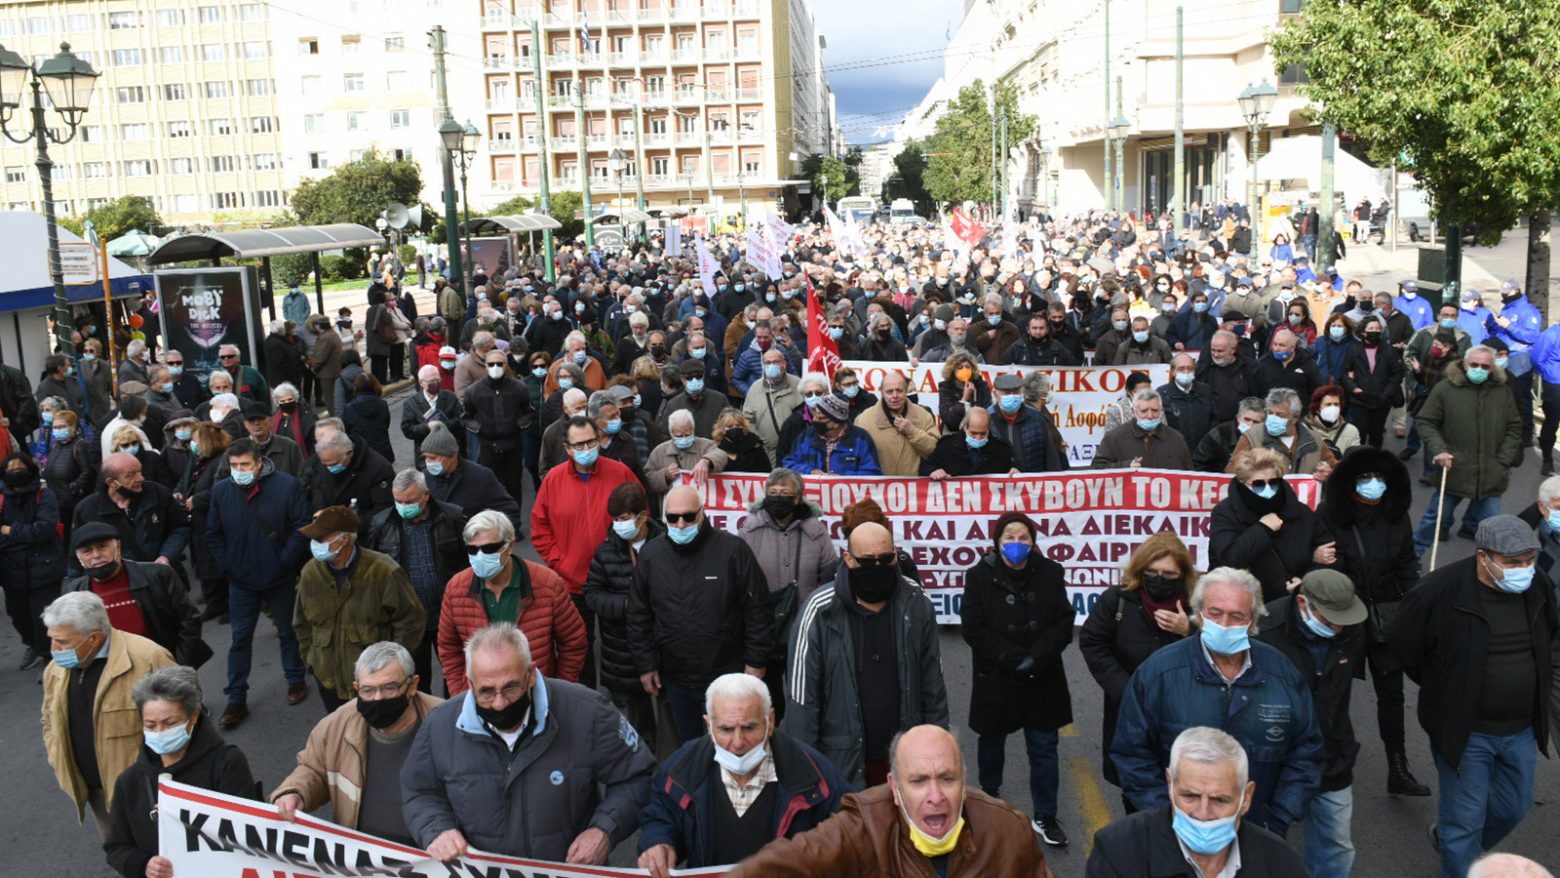 Συνταξιούχοι - Μεγάλο συλλαλητήριο στην Αθήνα για αύξηση των συντάξεων και στήριξη του ΕΣΥ